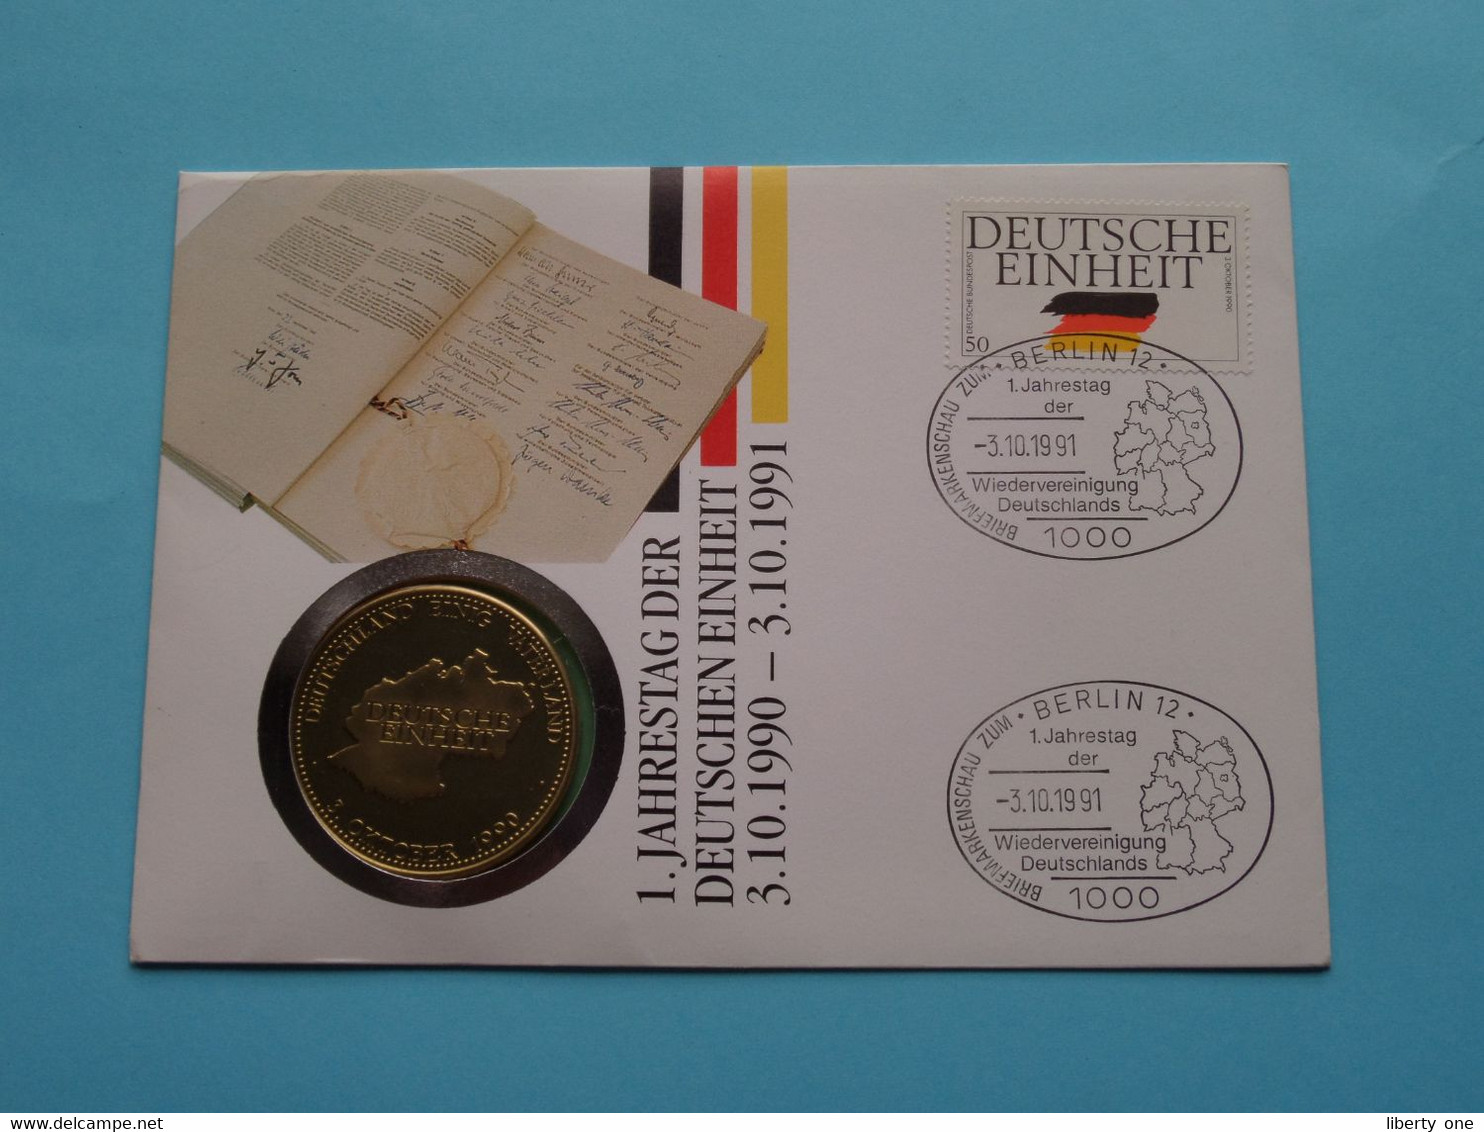 DEUTSCHE EINHEIT 3 OKTOBER 1990 ( Stamp > 1991 ) N° 2708 ! - Elongated Coins